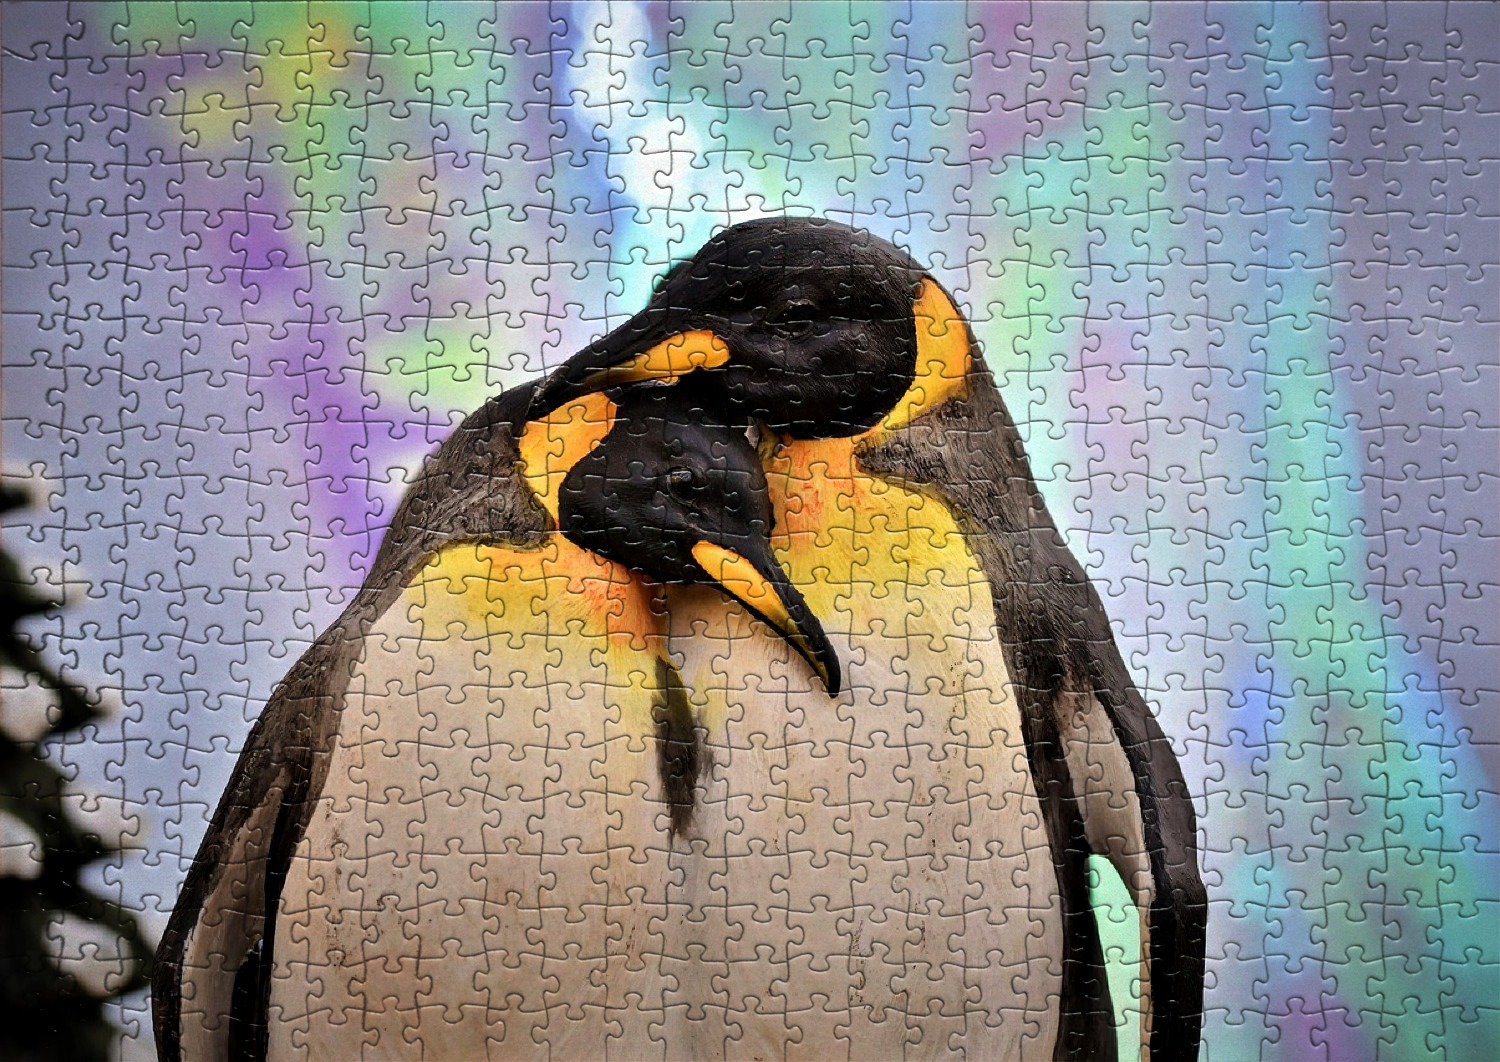 Les pingouins et manchots en puzzles